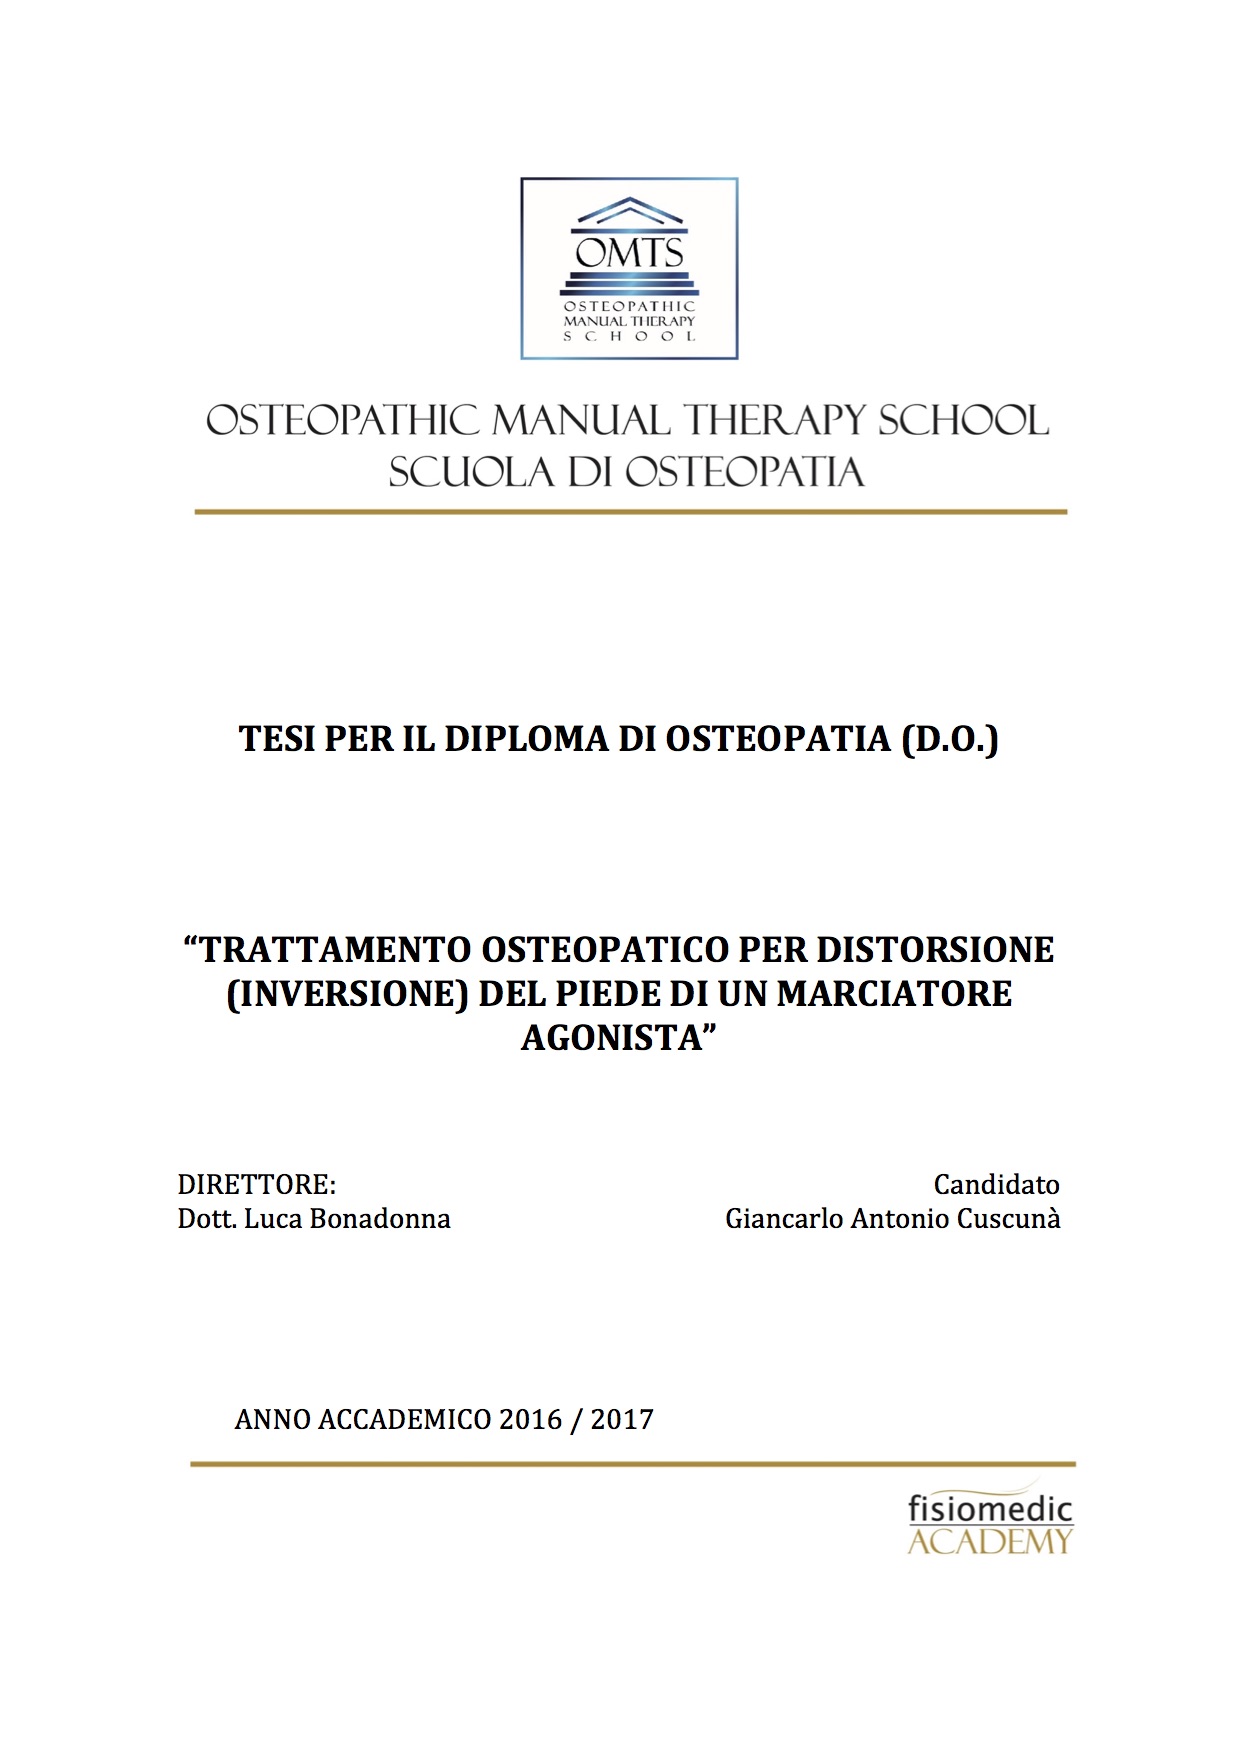 Giancarlo Cuscuna Tesi Diploma Osteopatia 2017